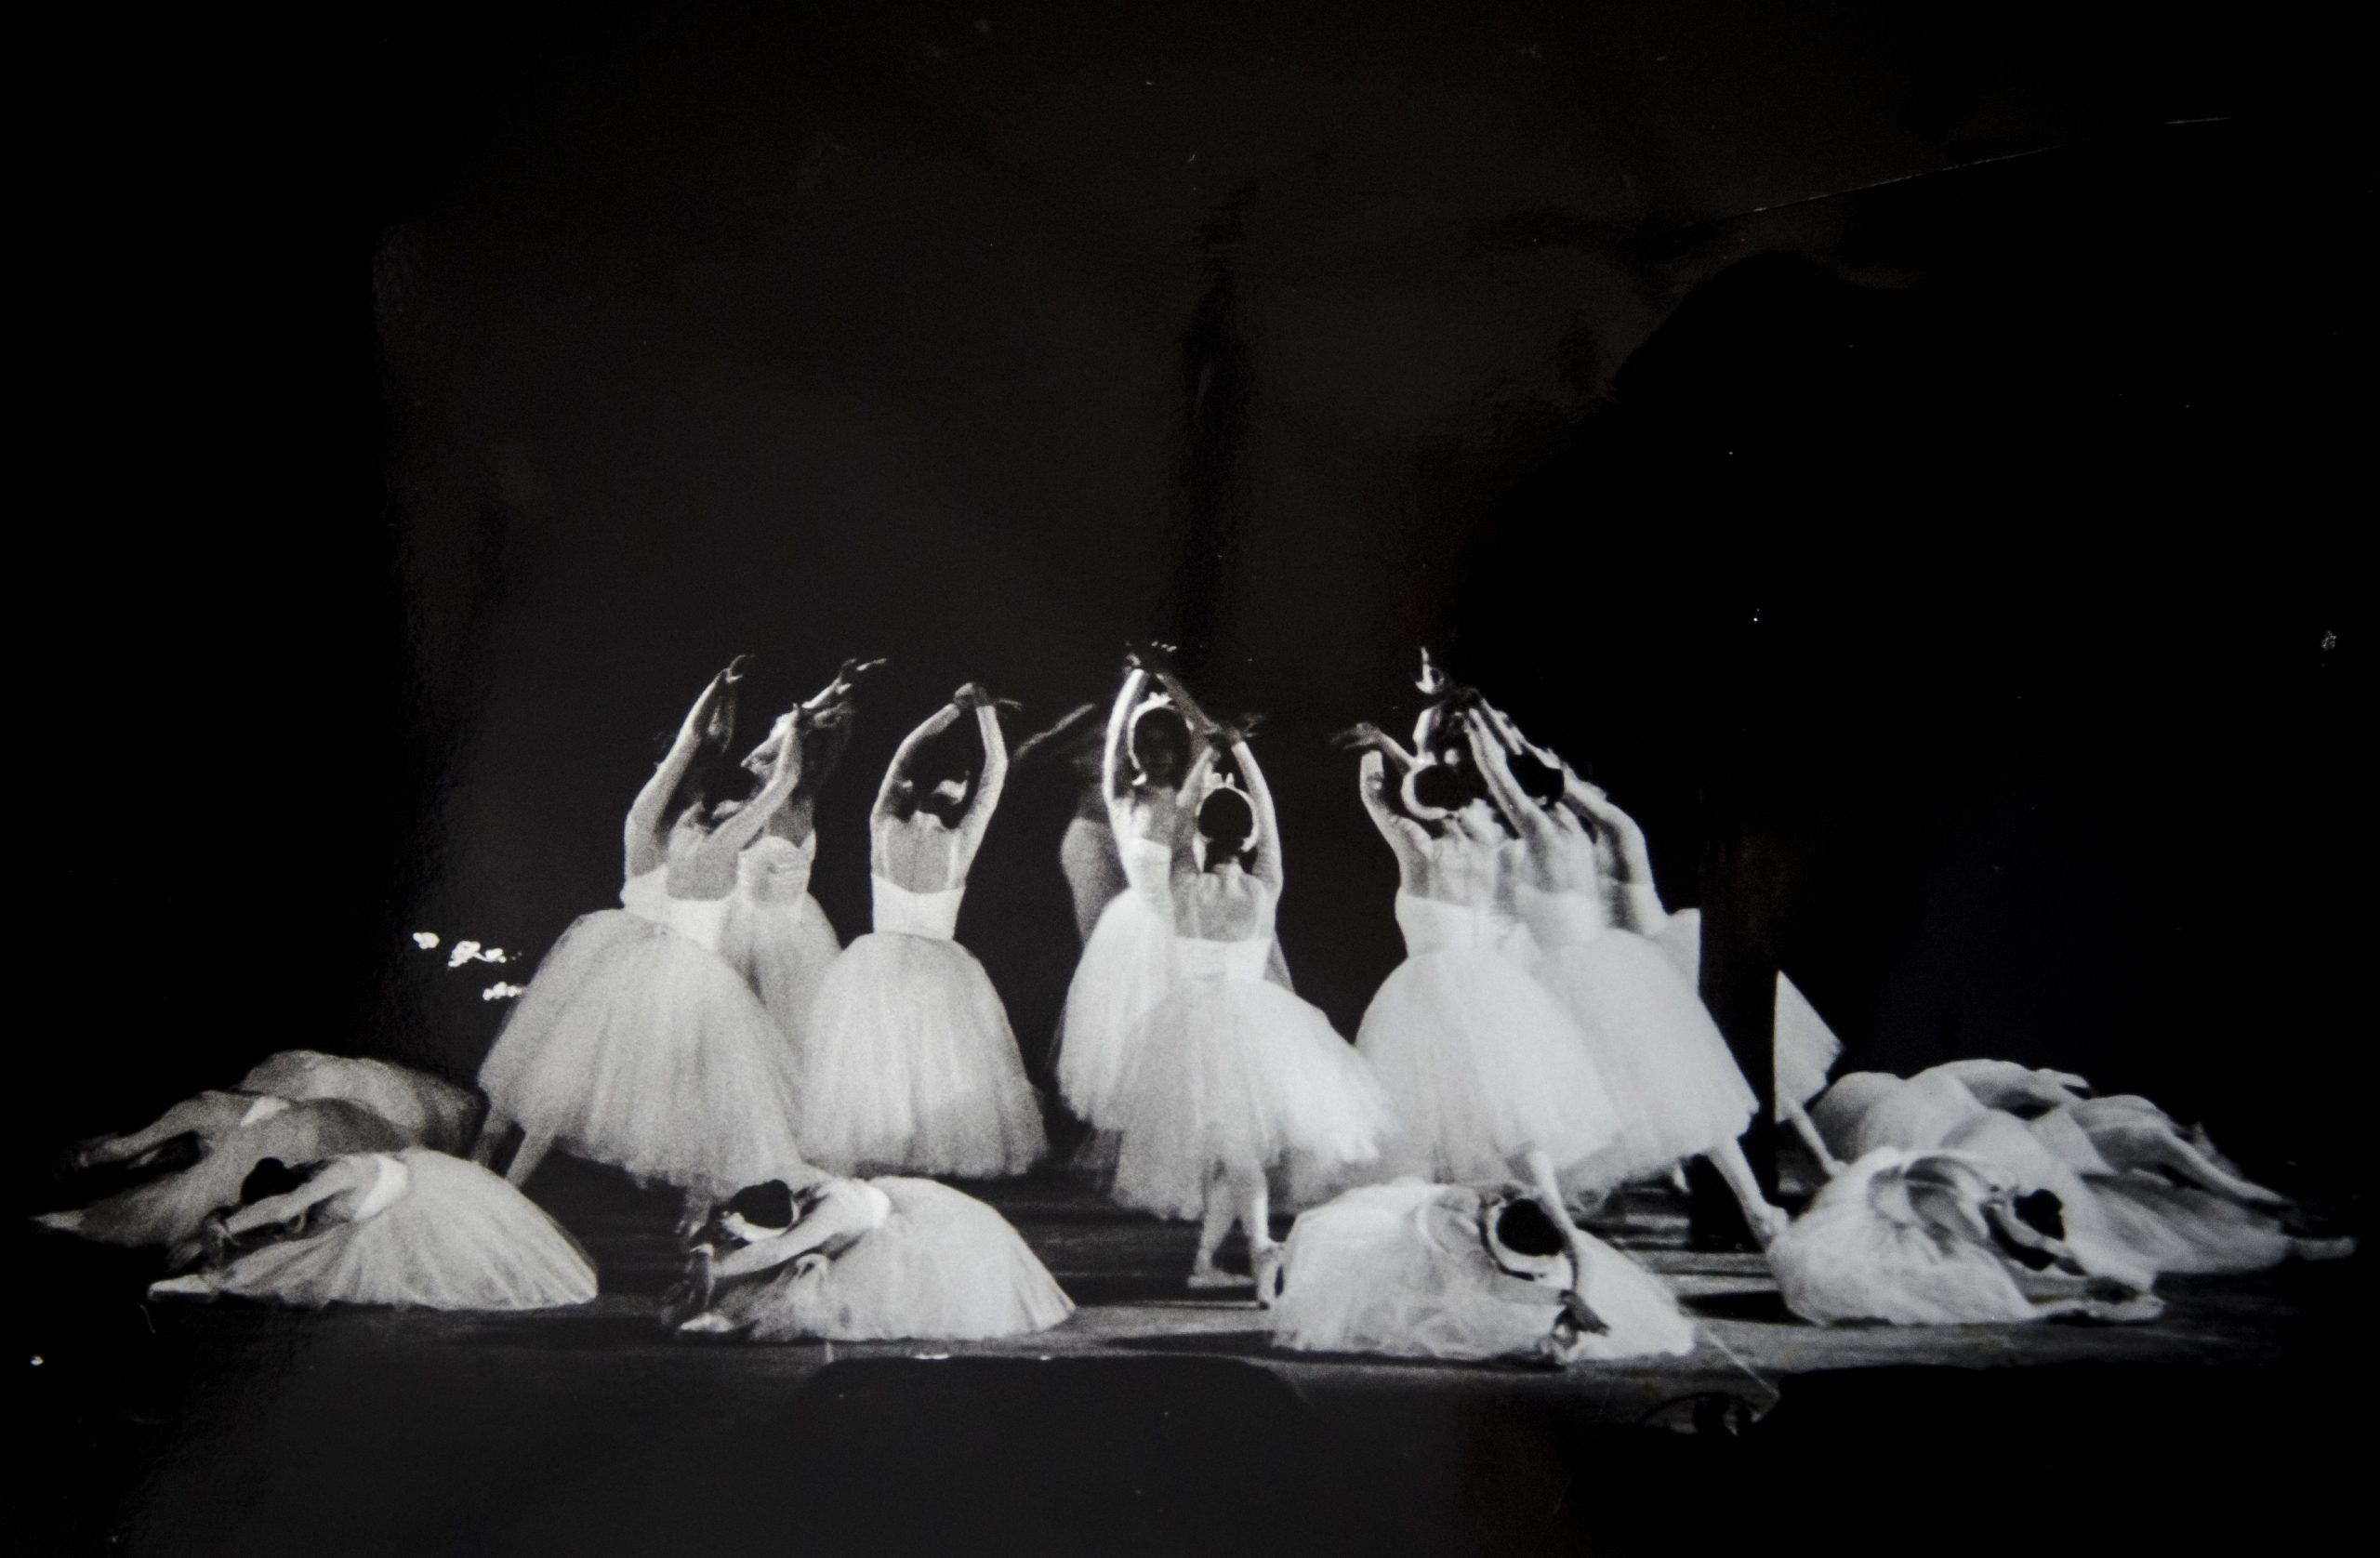 La Compañía Nacional de Danza promueve la contemporaneidad con nuevas expresiones artísticas